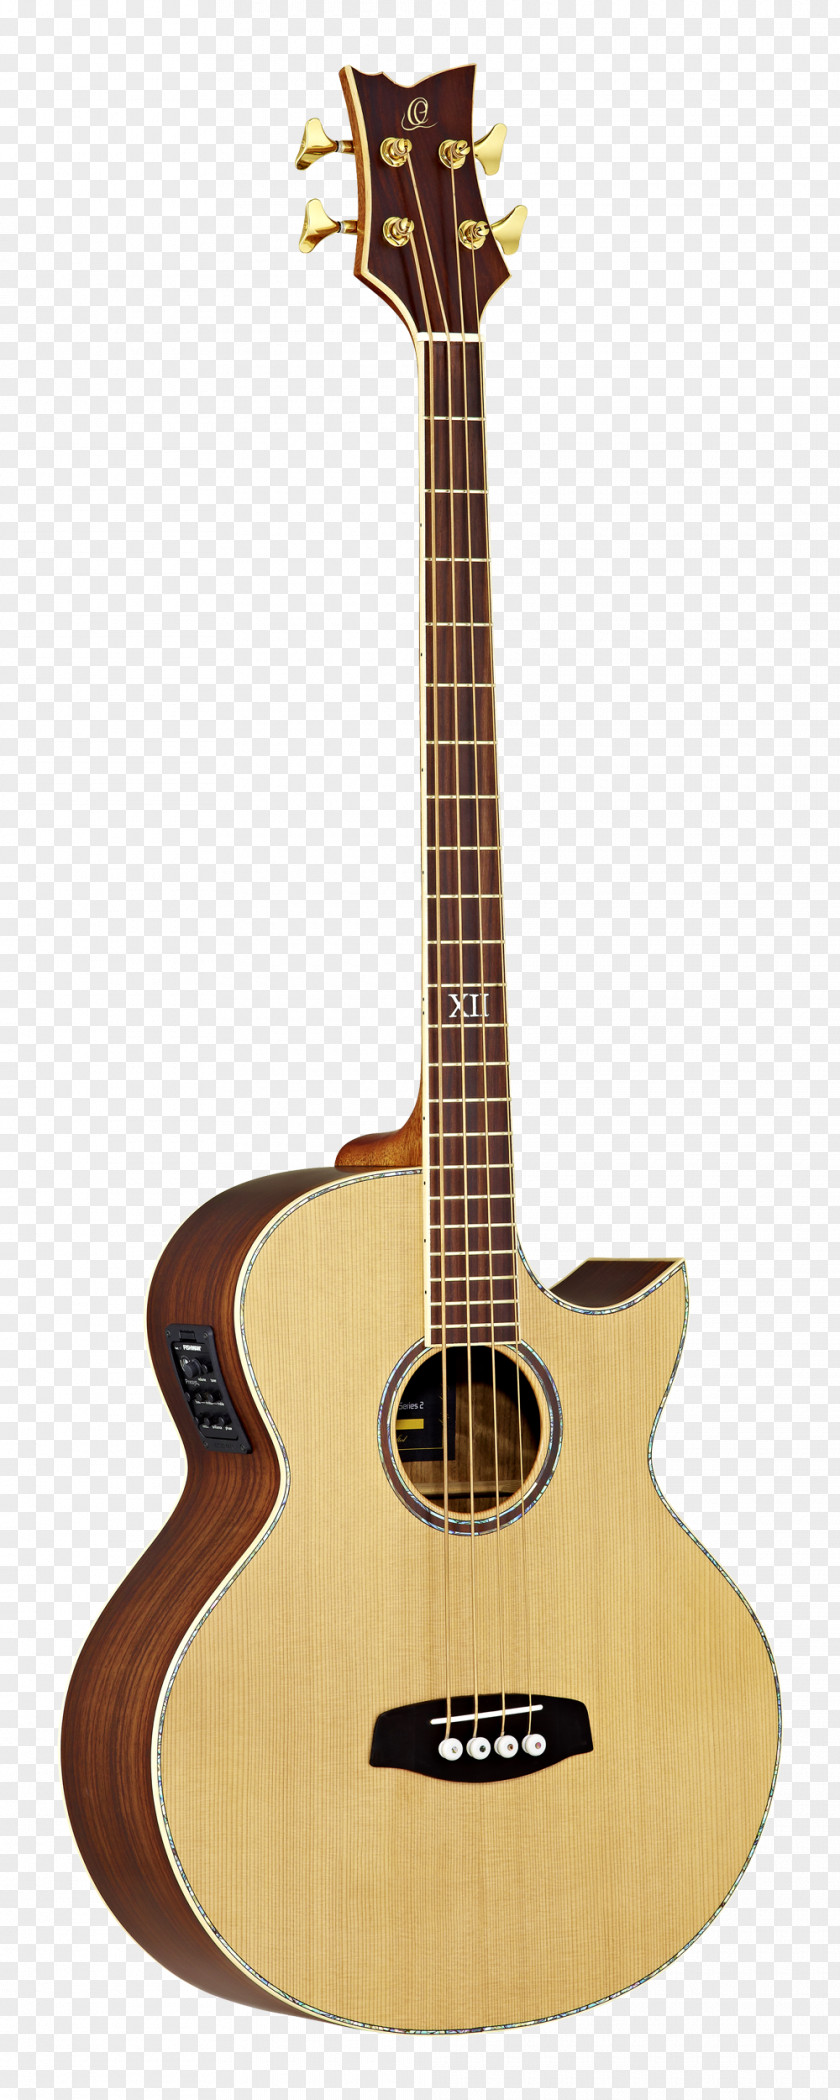 Amancio Ortega Musical Instruments Acoustic Guitar Ukulele Bass PNG